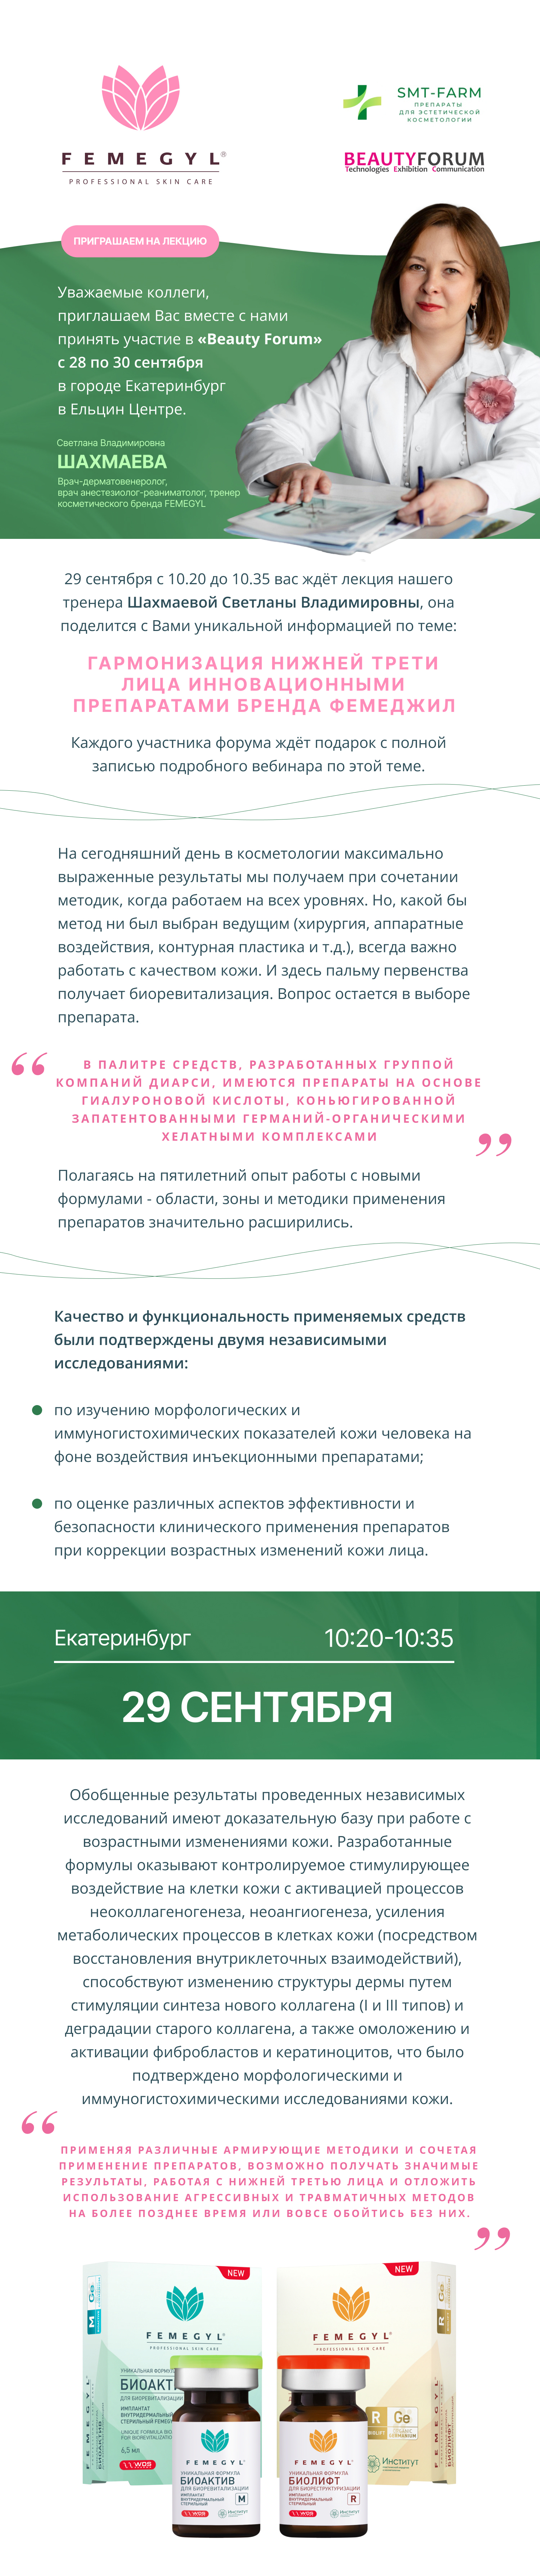 Femegyl на BeautyForum в Екатеринбурге